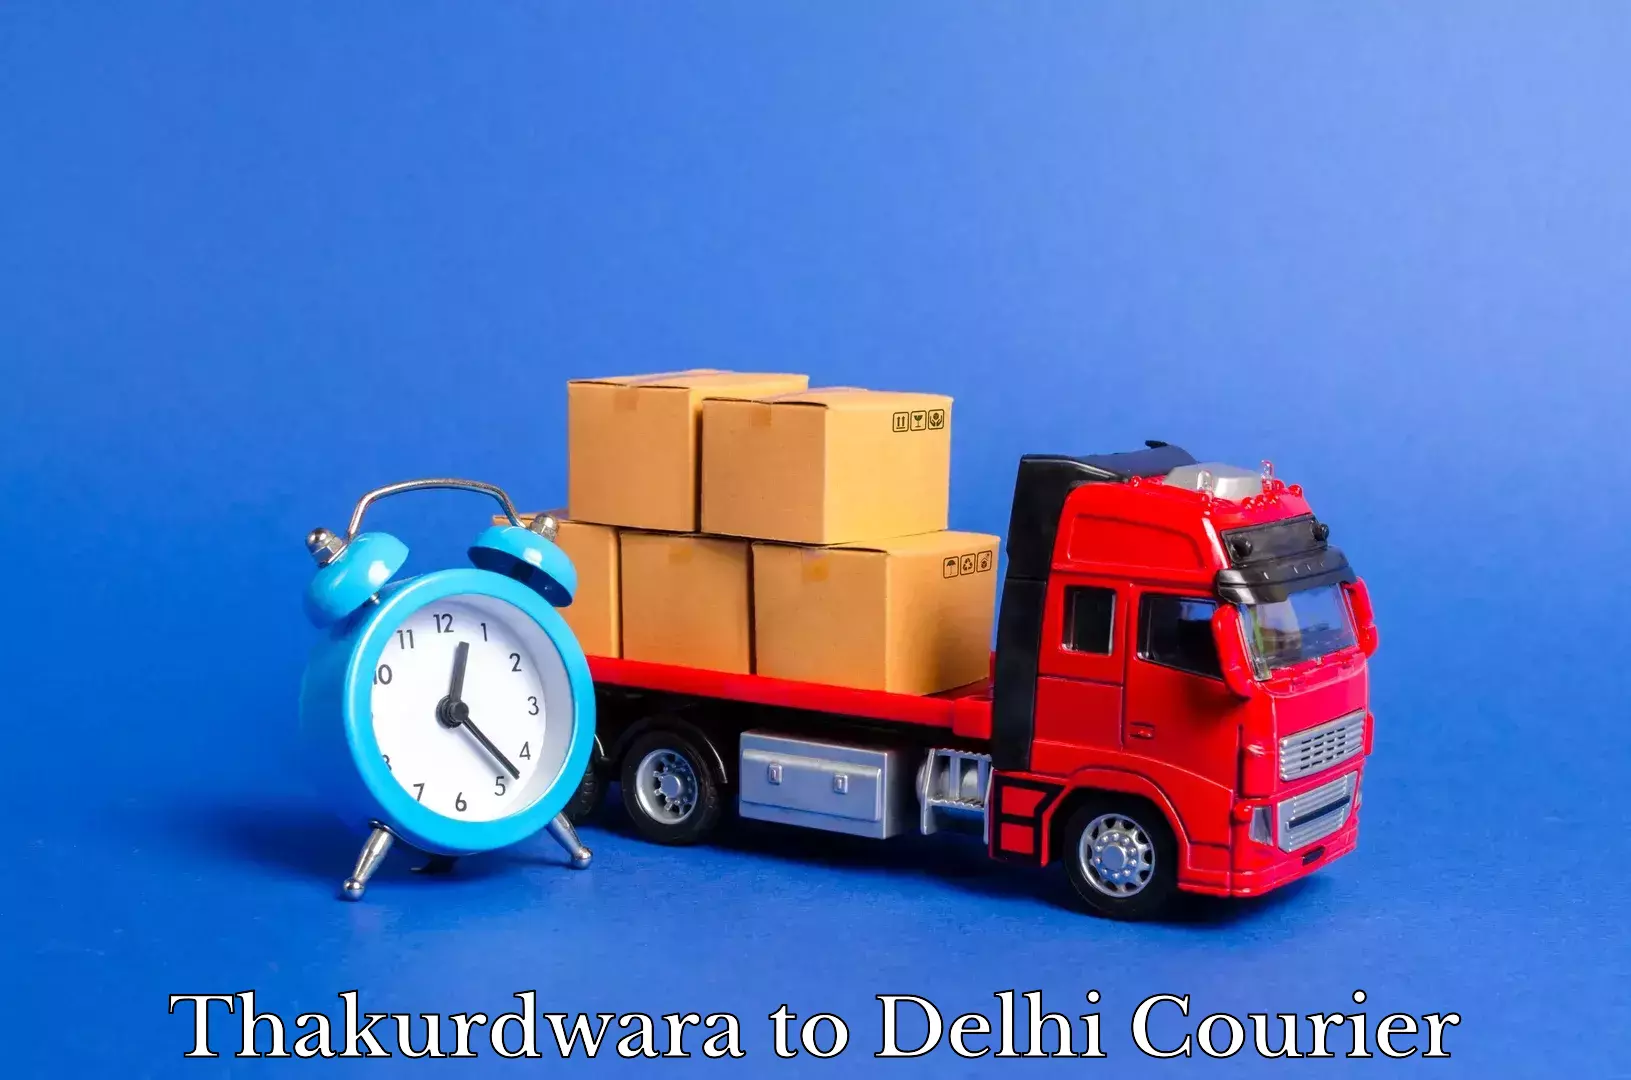 Furniture transport specialists in Thakurdwara to Delhi